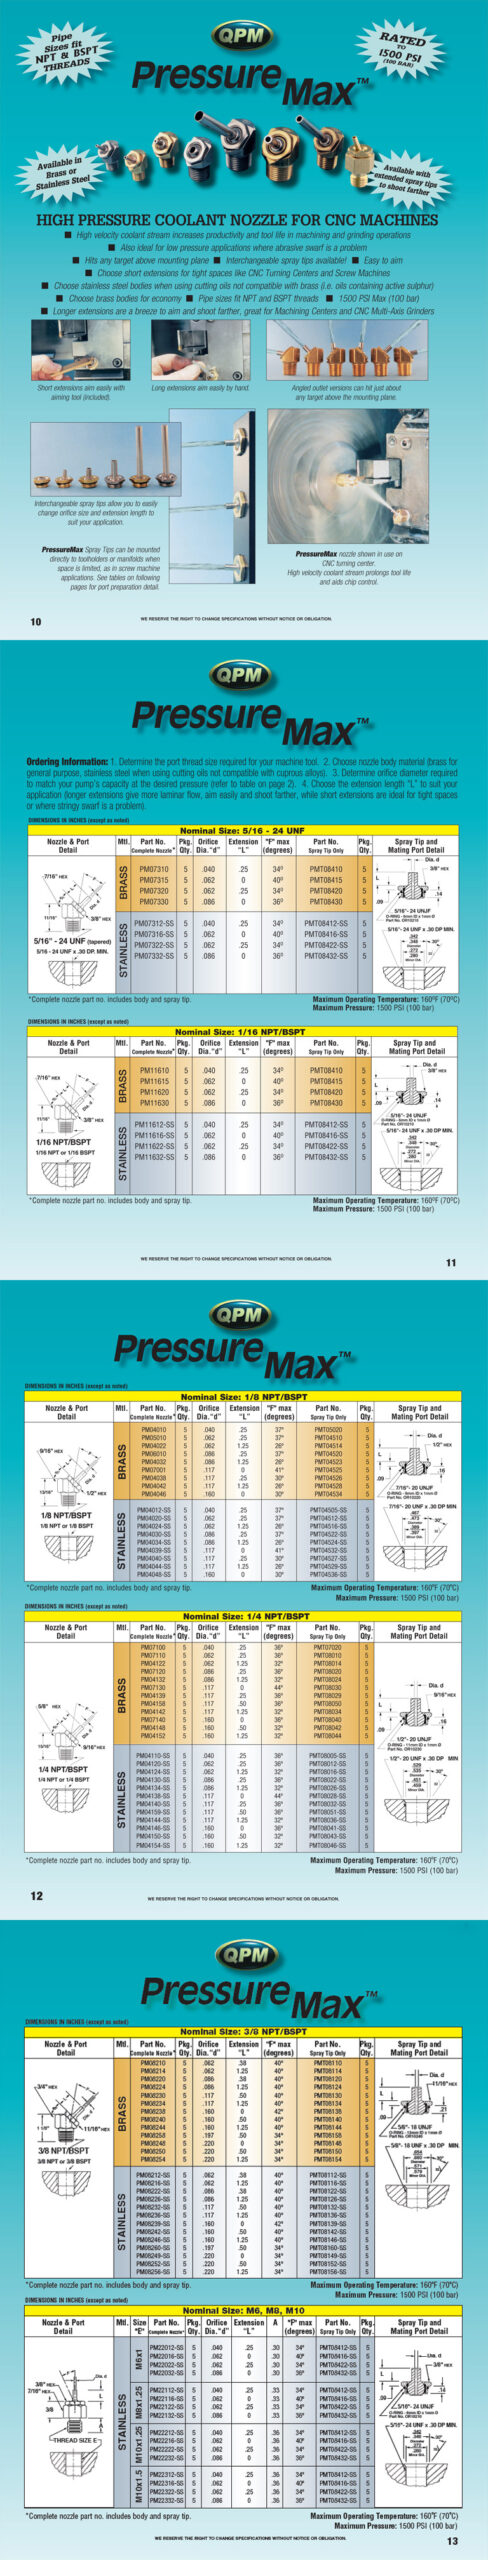 Katalog Hochdruckdüse pressure max cnc skantek